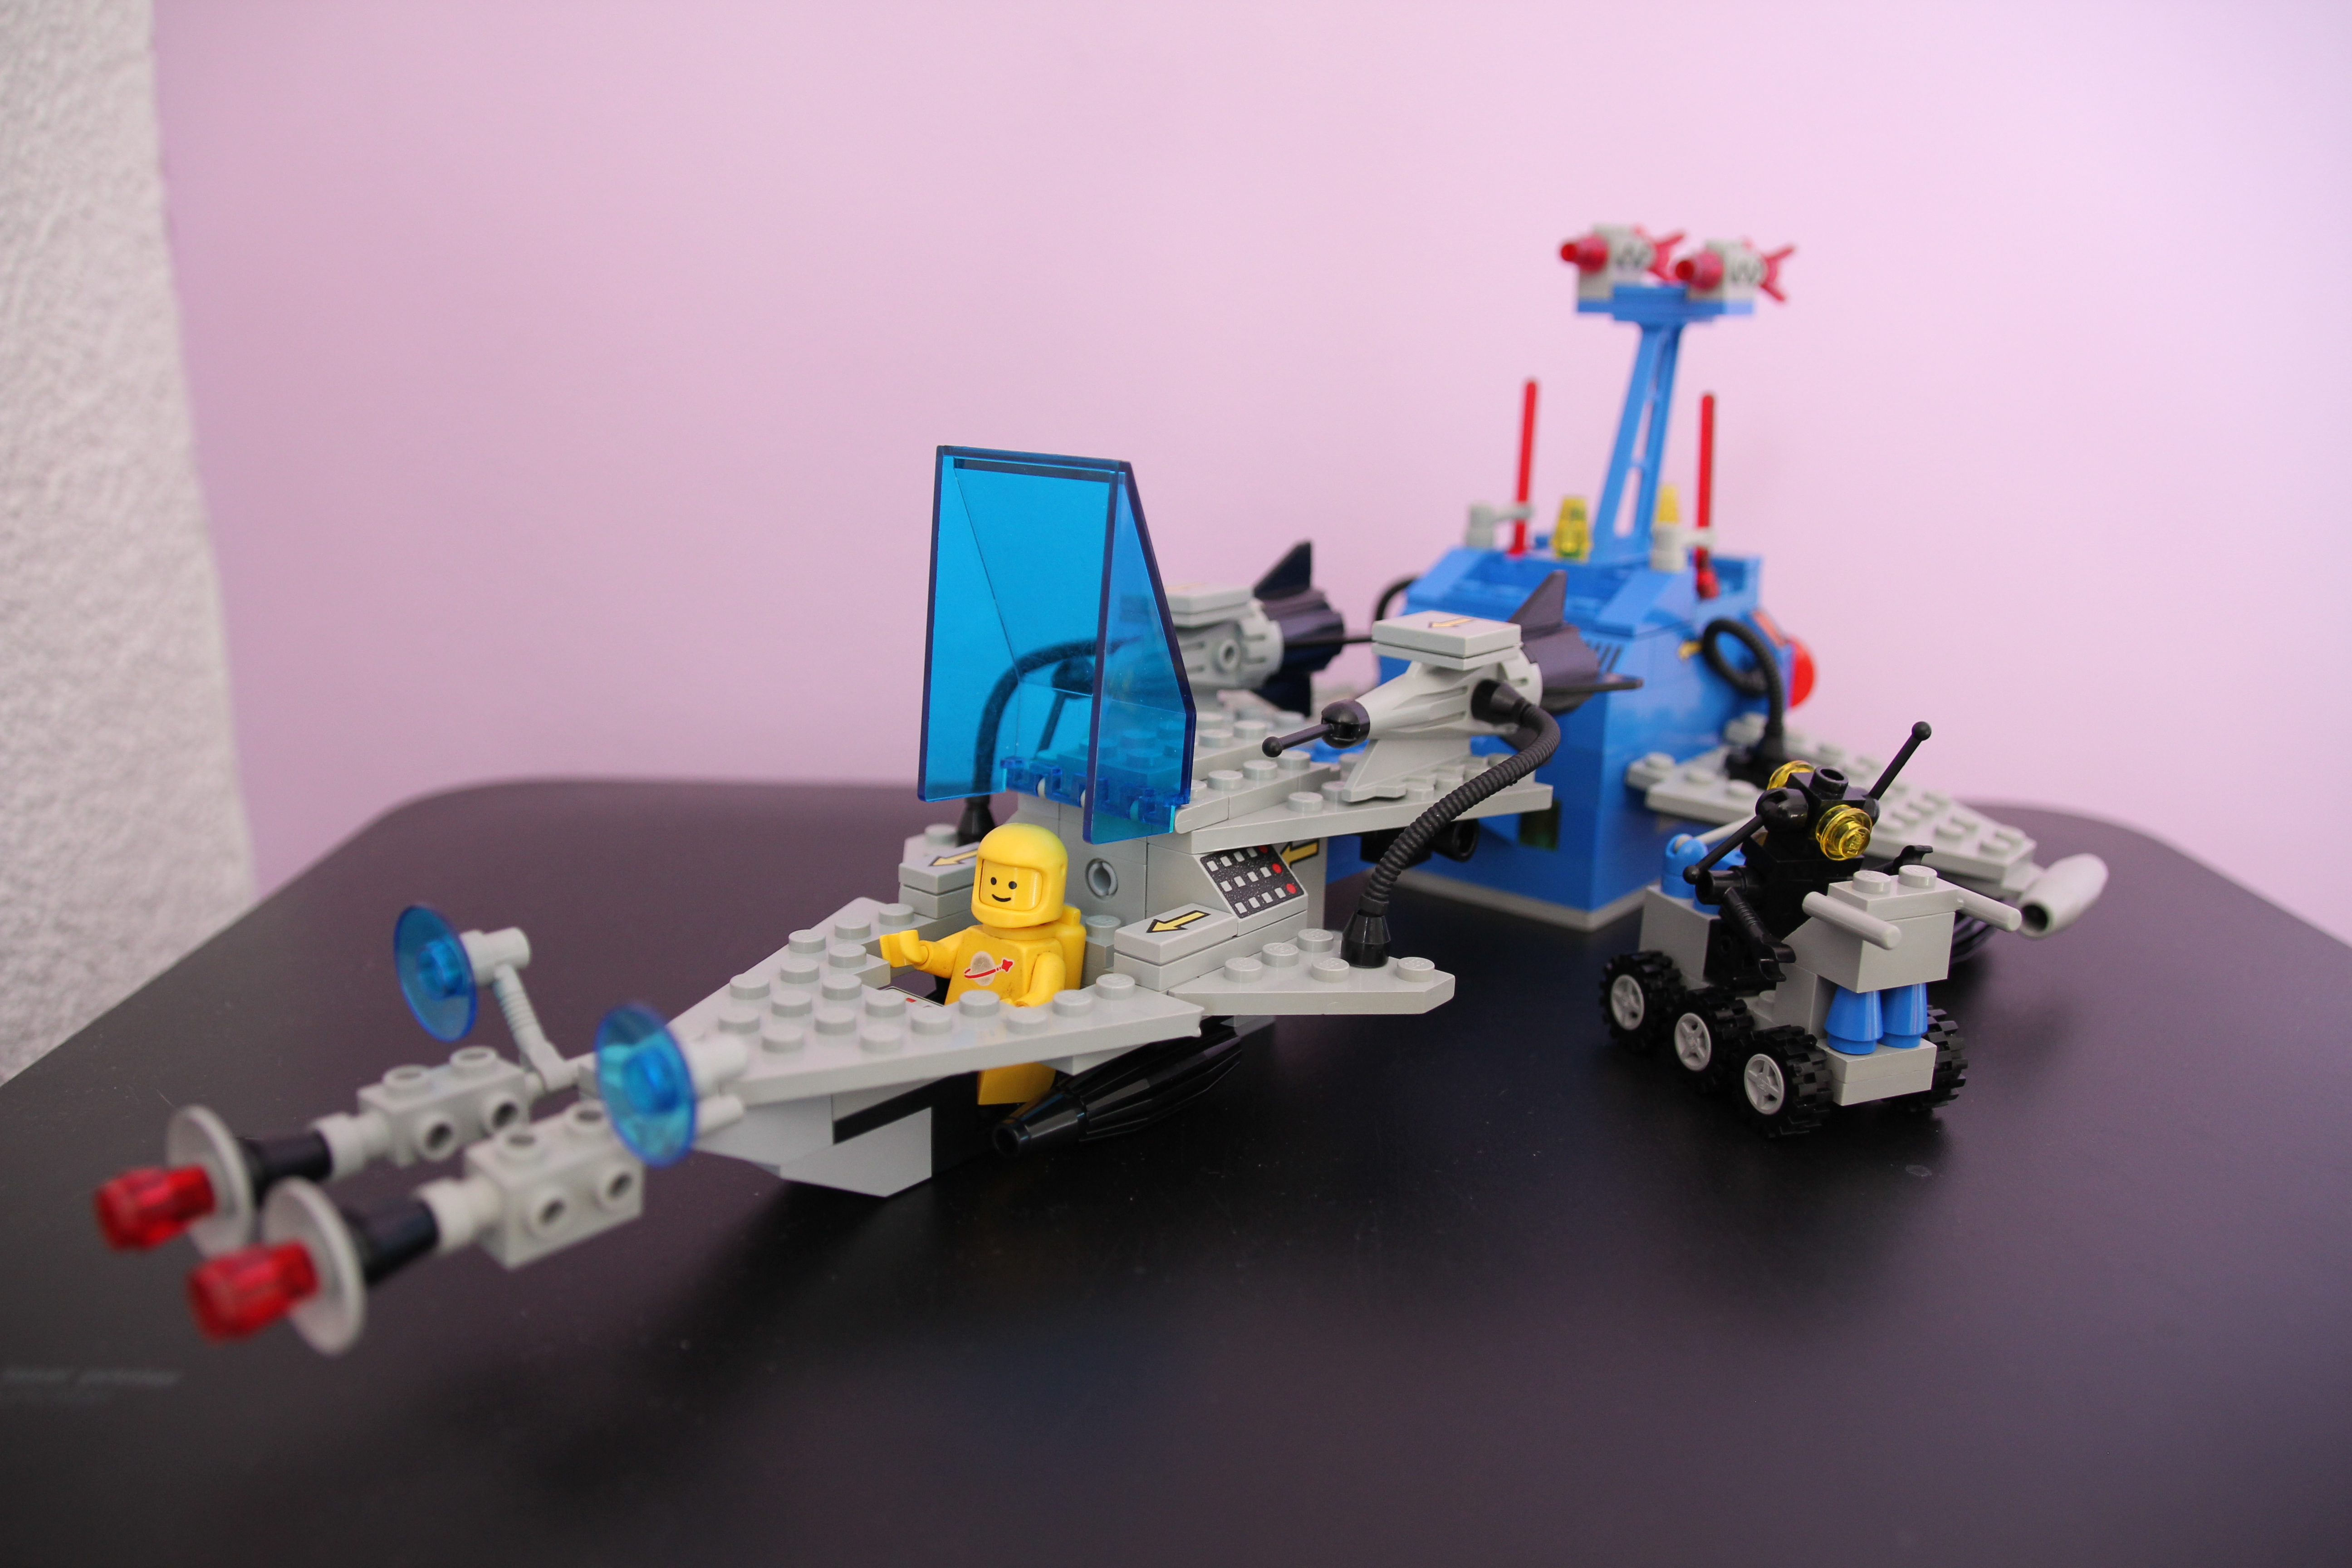 Zweistufen-Space-Cruiser mit Laboratorium, Laser-Sensoren, Astronauten, Labor-Fahrzeug und Lab-Roboter "Zip"